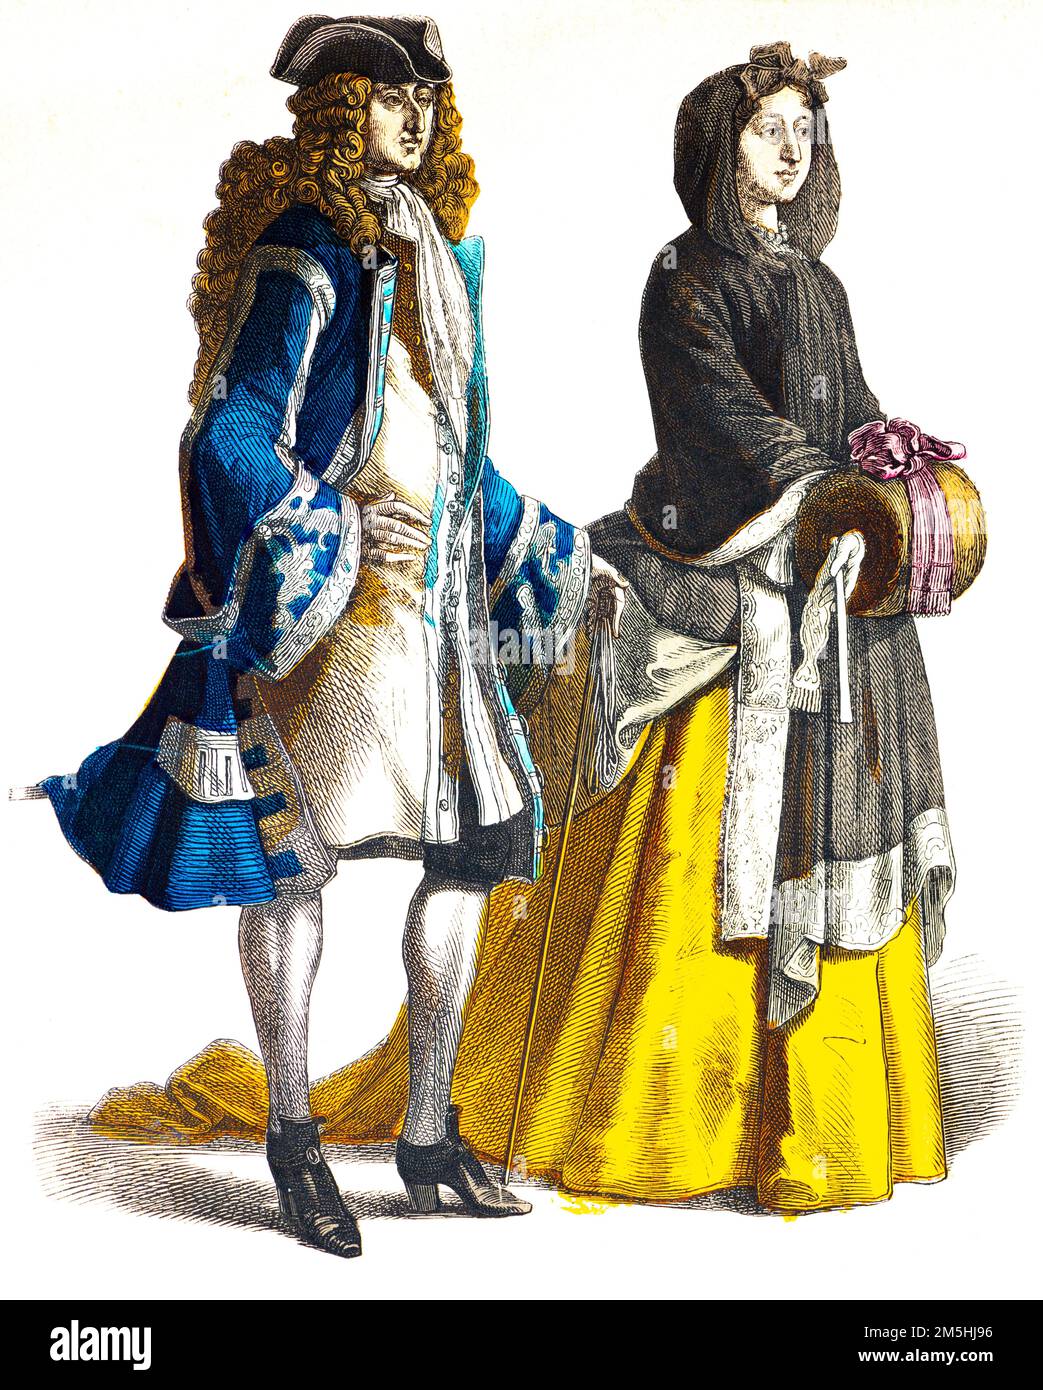 Costumes historiques au début du 18th siècle, illustration historique, Münchener Bilderbogen, München 1890 Banque D'Images